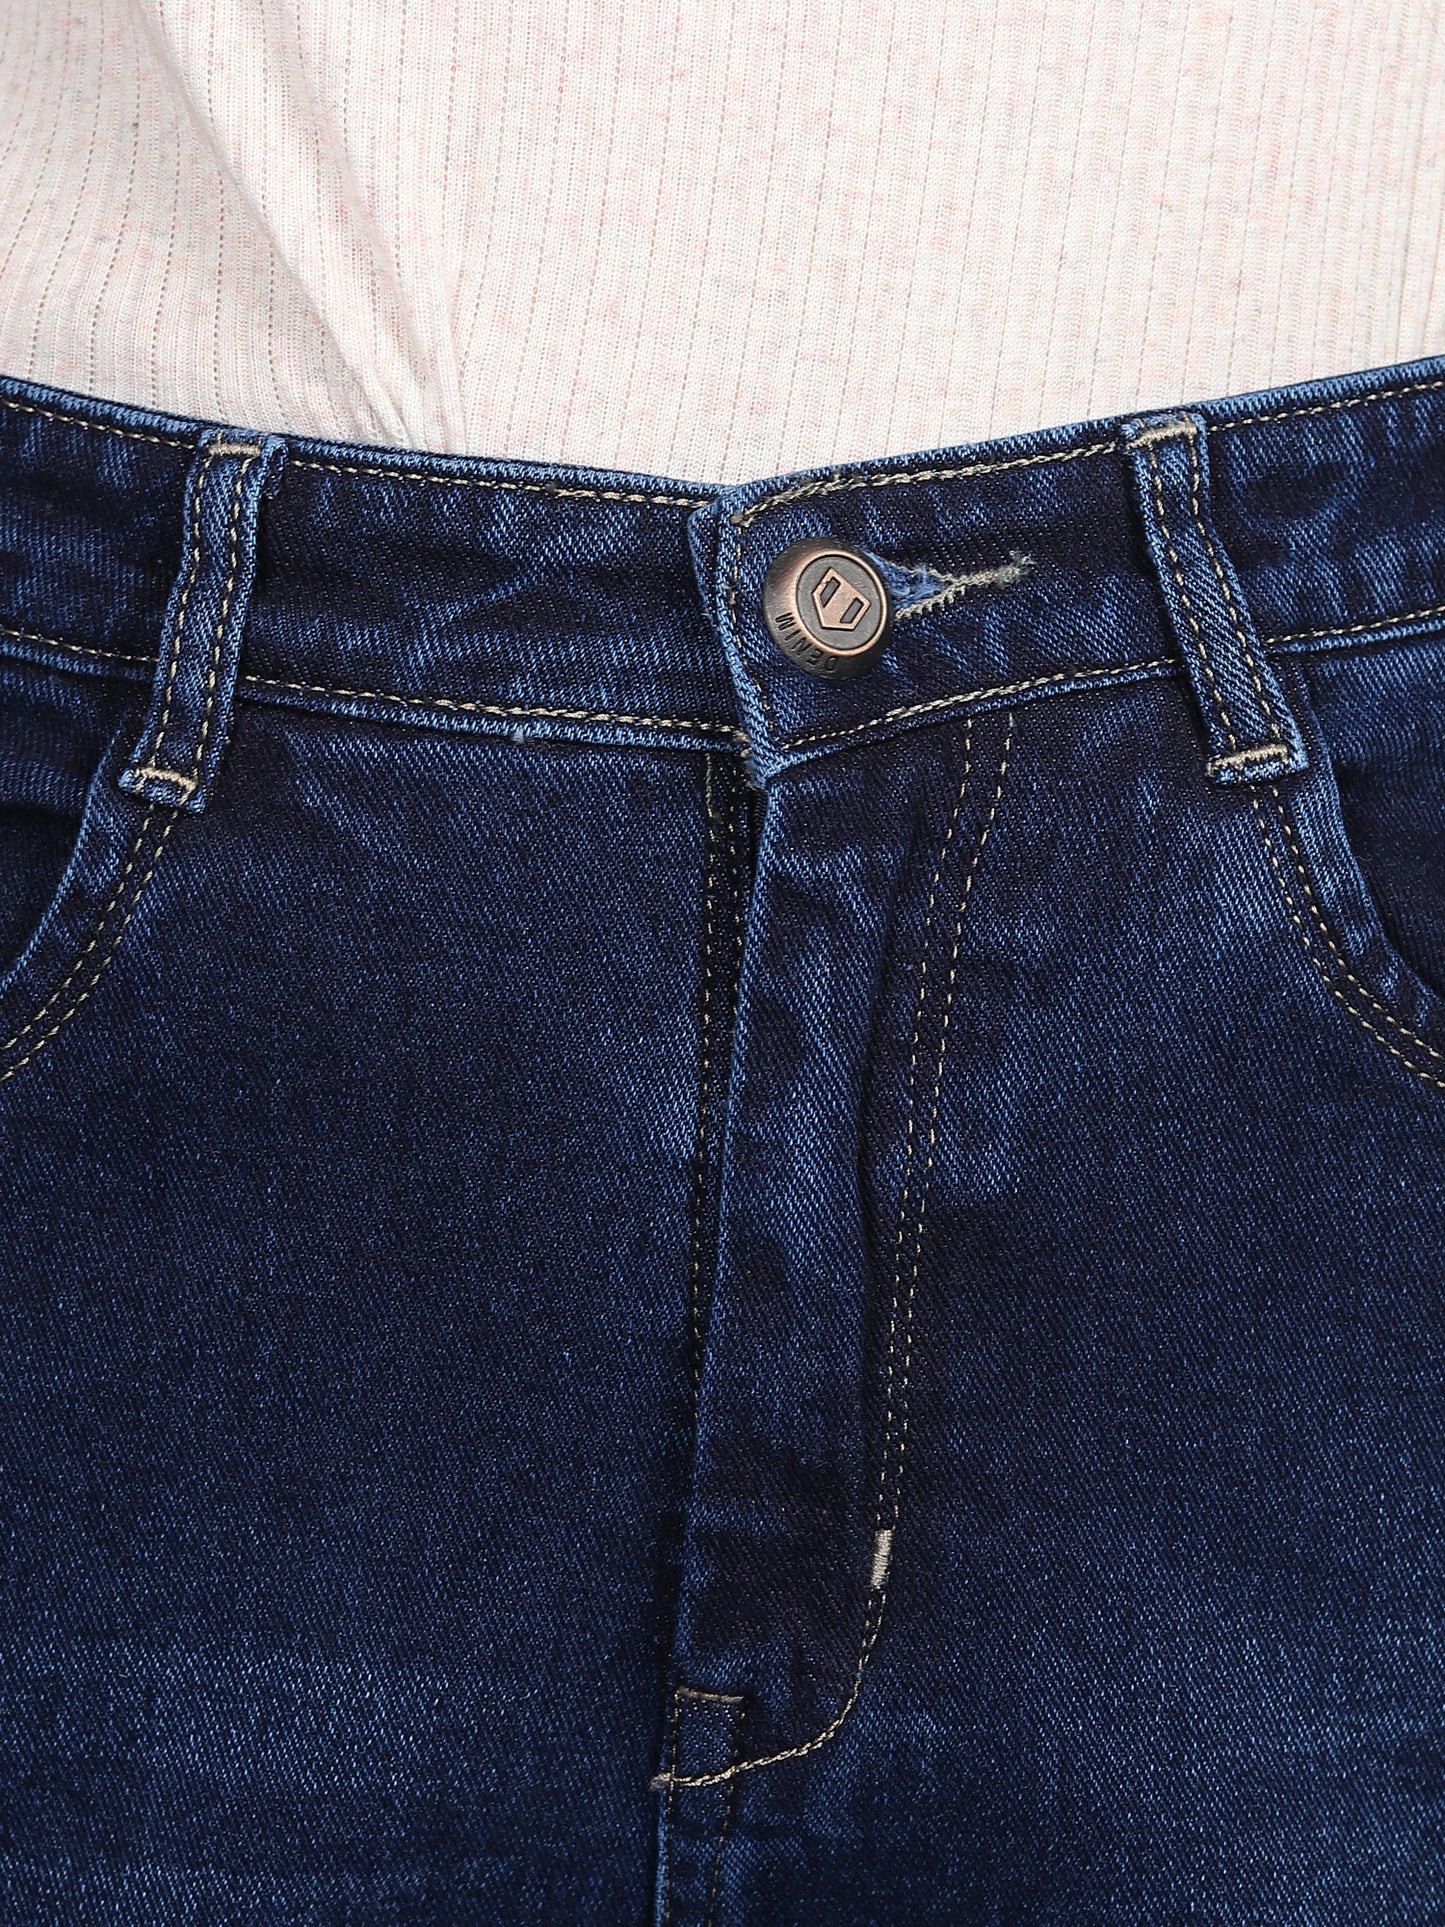 Navy Boyfriend Fit Cotton Lycra Regular Denim Jeans for Women-6041